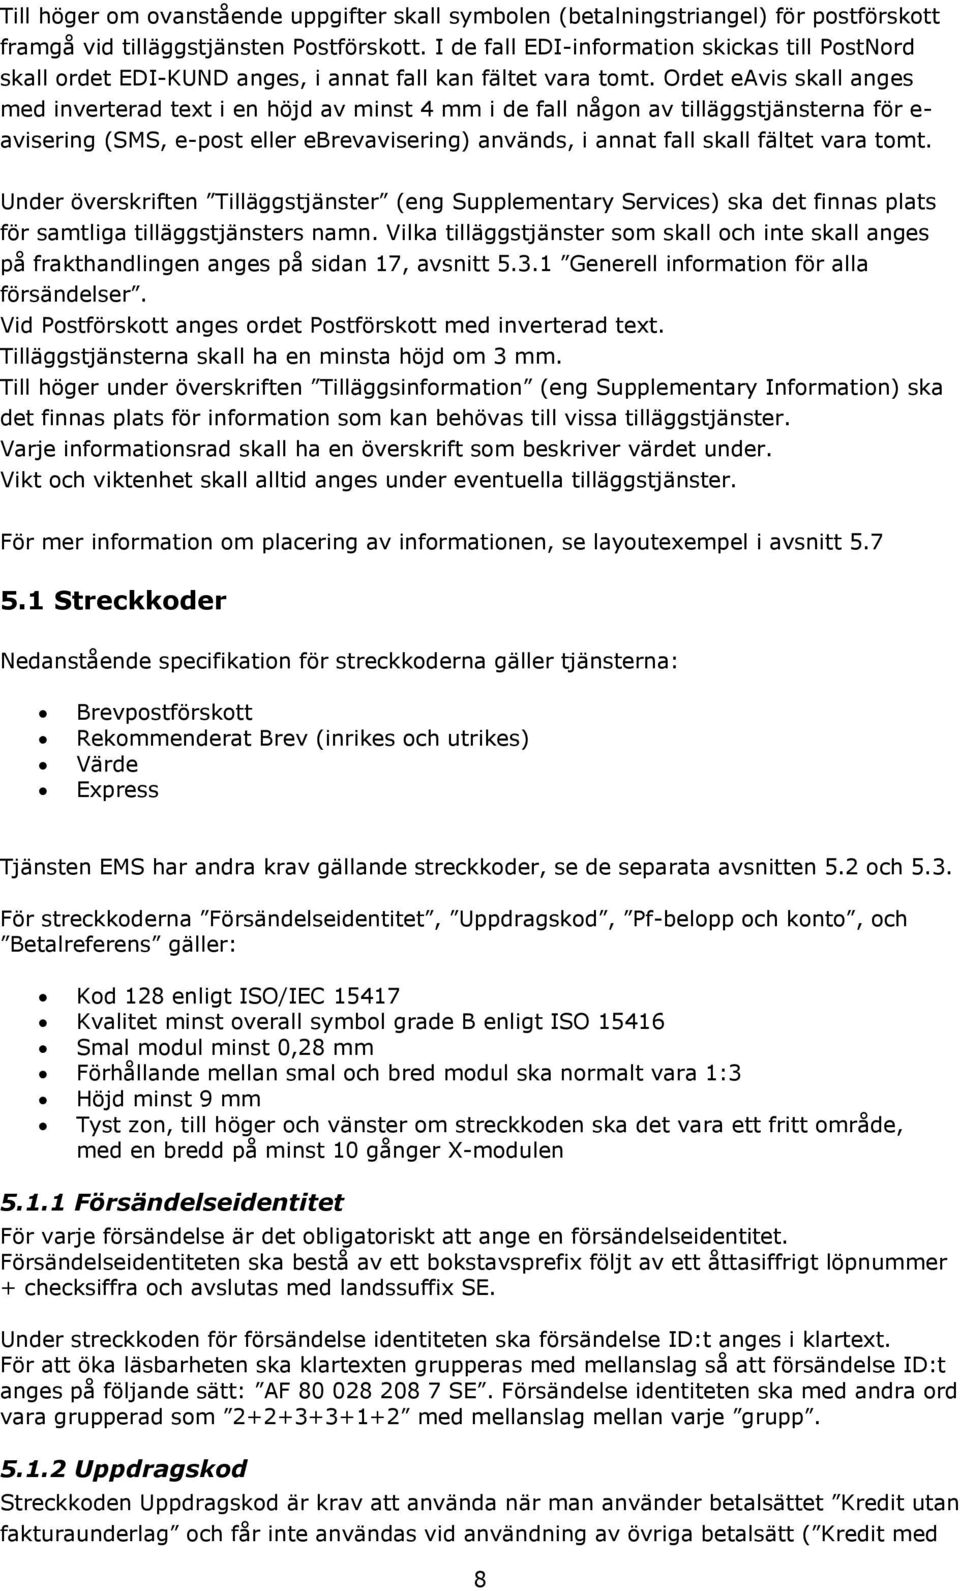 Teknisk specifikation för Brev med EDI. Avseende REK, EMS, Värde, Express  och Brevpostförskott - PDF Free Download